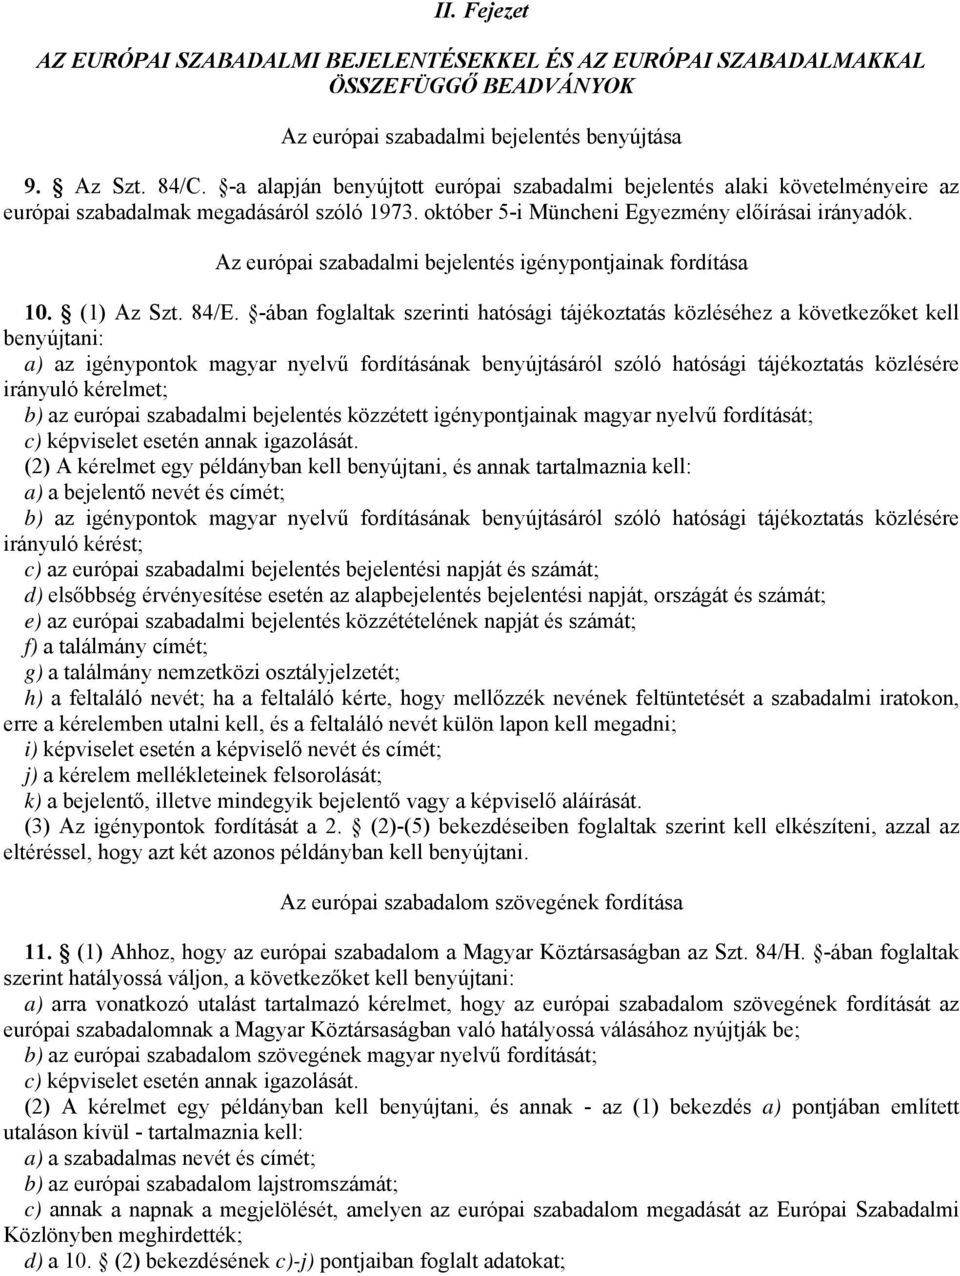 Az európai szabadalmi bejelentés igénypontjainak fordítása 10. (1) Az Szt. 84/E.